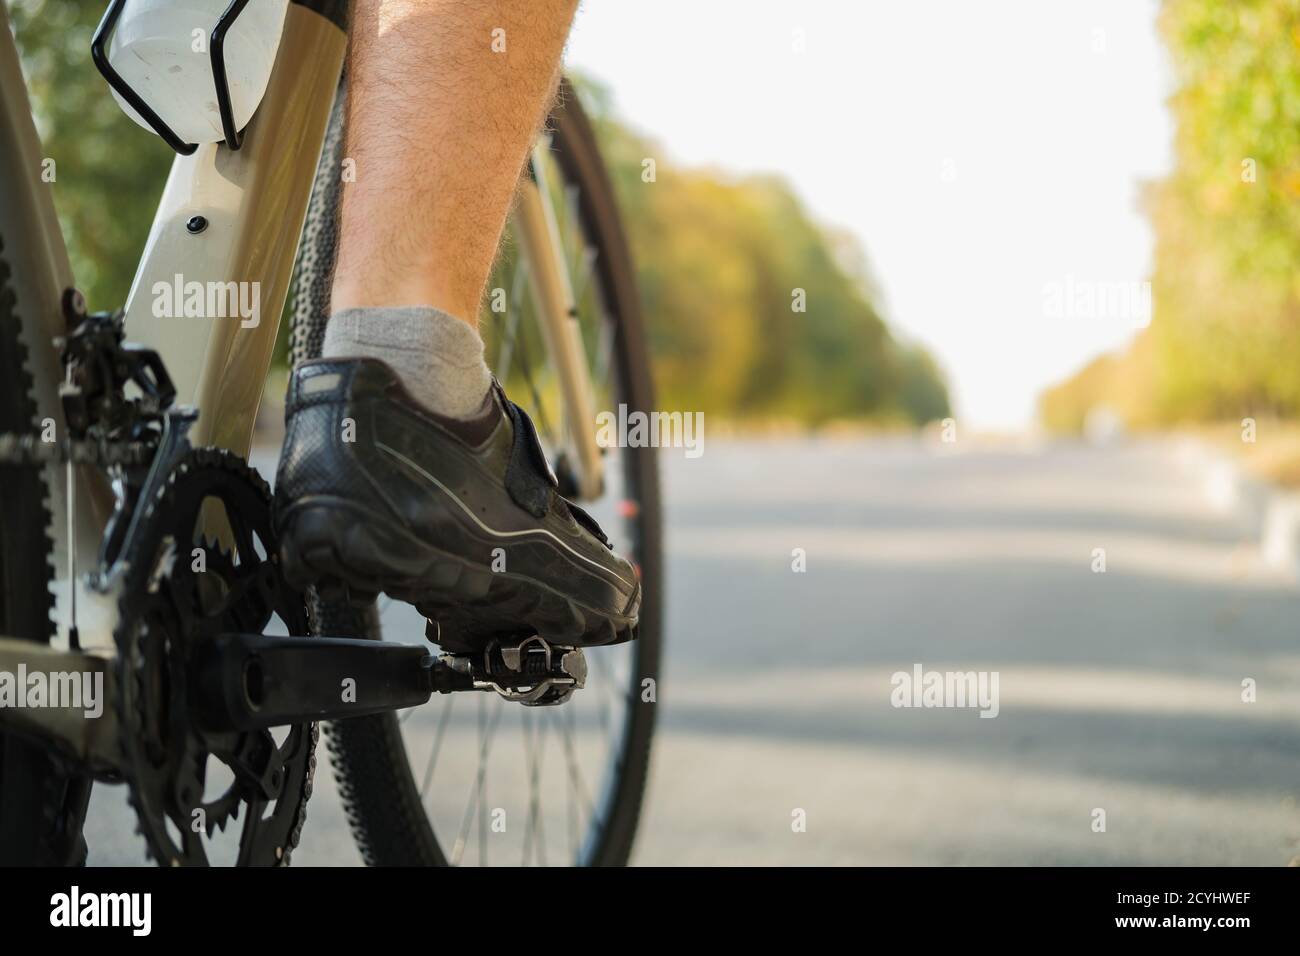 Chaussures de vélo avec pédales sans clicpless sur le pédalier, copier la vue de l'espace. Performances de cyclisme, mode de vie actif, concept d'entraînement de vélo Banque D'Images